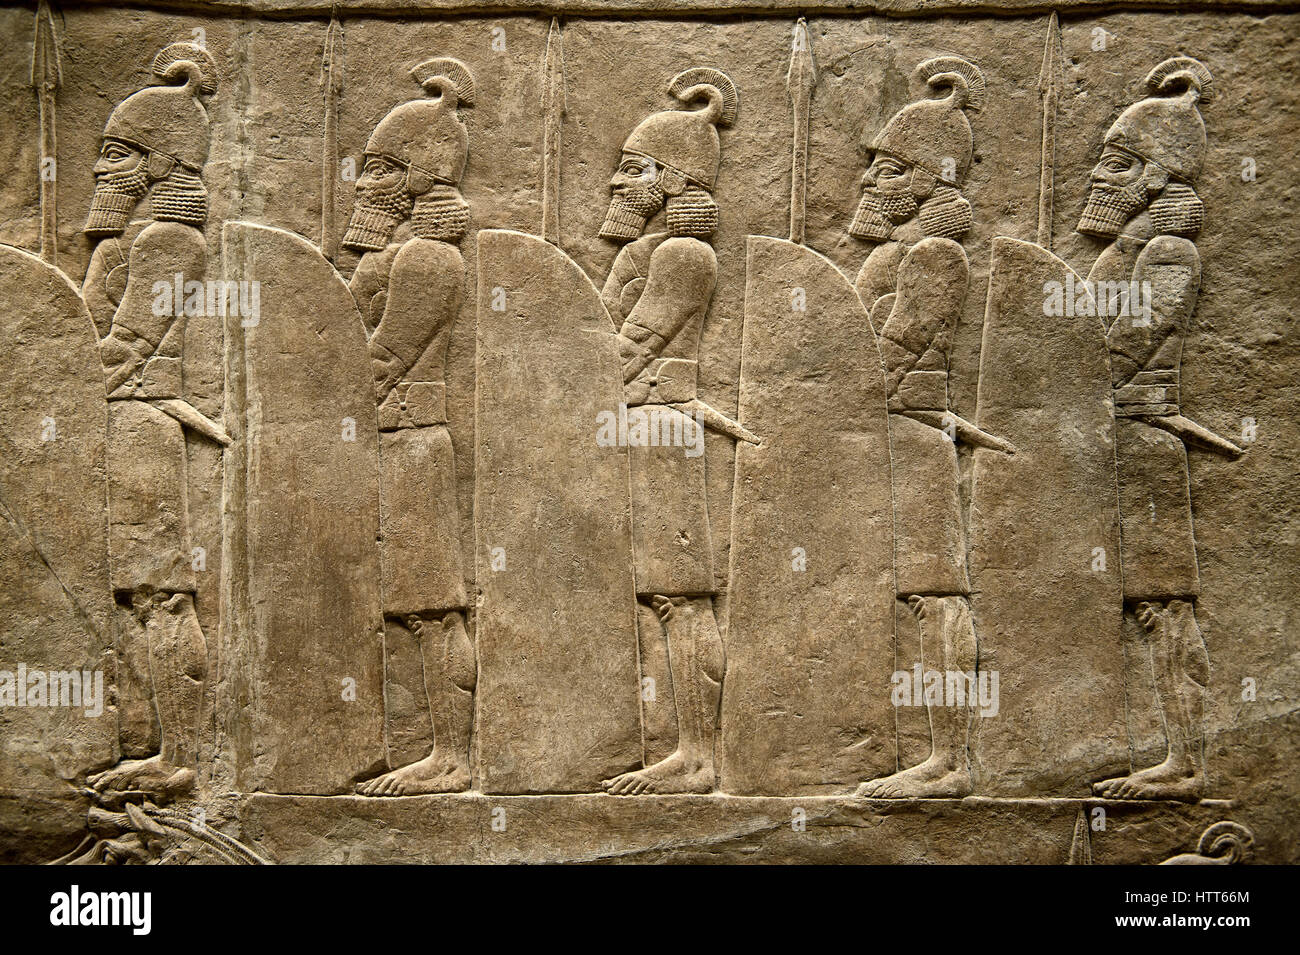 Sculpture bas-relief assyrien de bord de la route à partir de la doublure de soldats le roi Assurnazirpal chasse aux lions. De Ninive au nord, l'Irak, Palais 668-627 B.C. B Banque D'Images